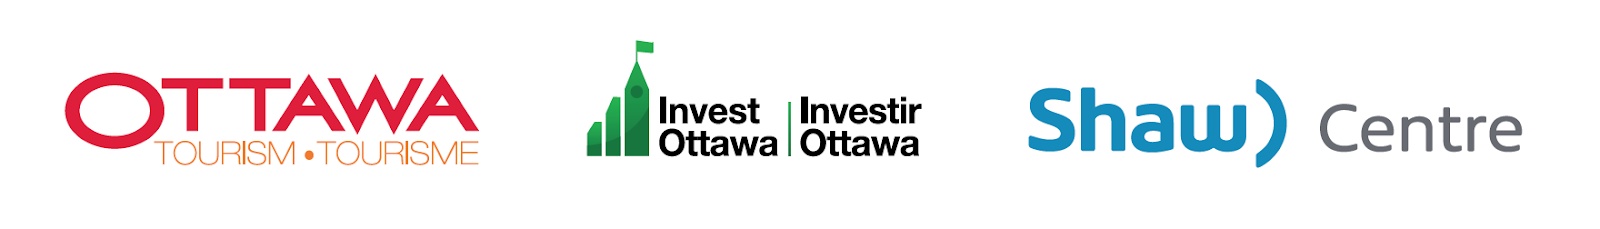 Ottawa Tourism | Invest Ottawa | Shaw Centre